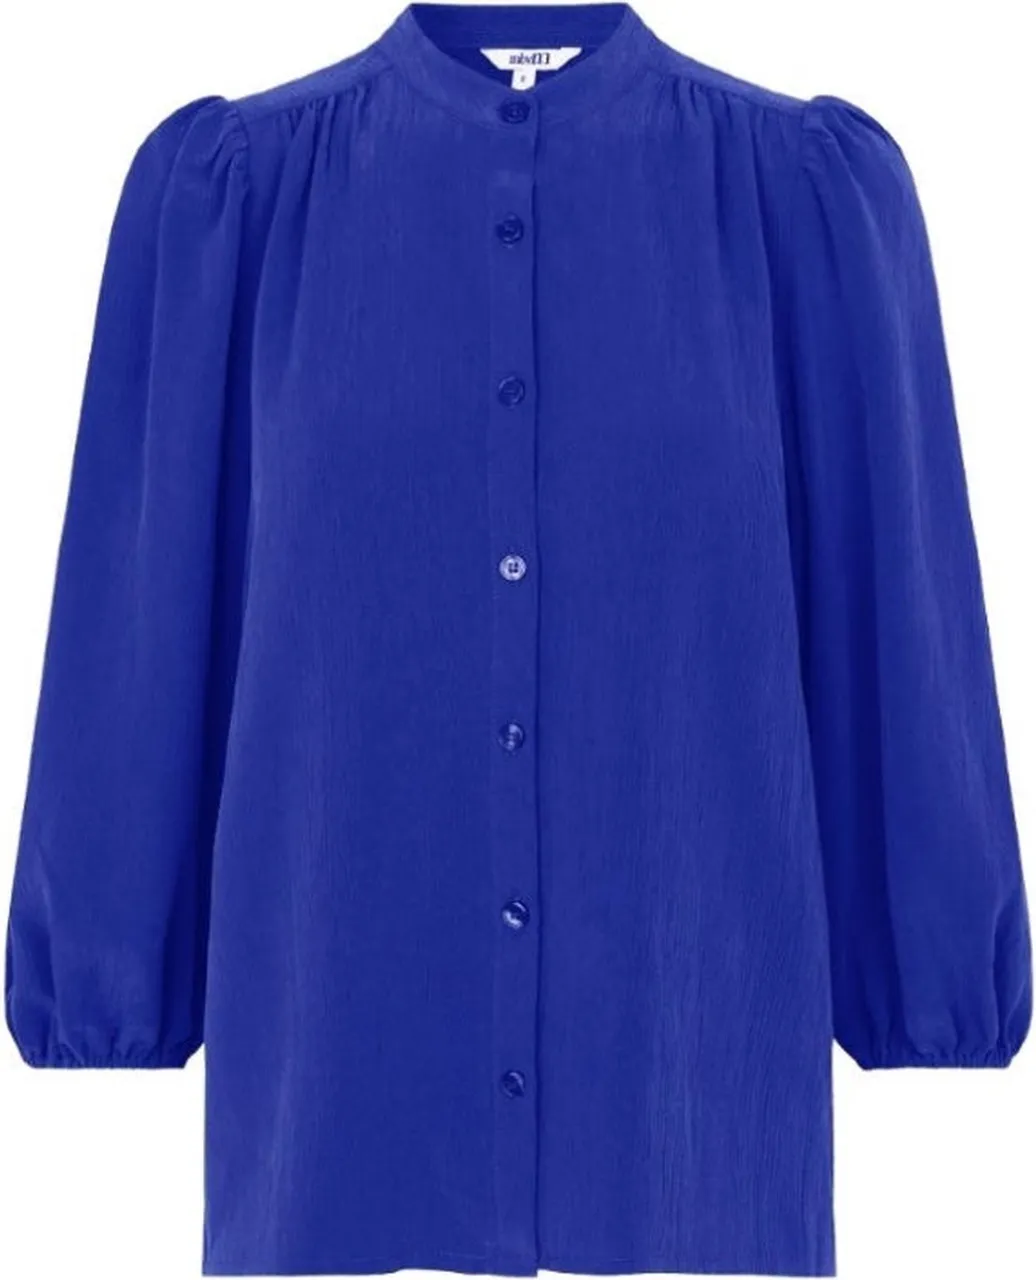 Blauwe blouse Solstice - mbyM